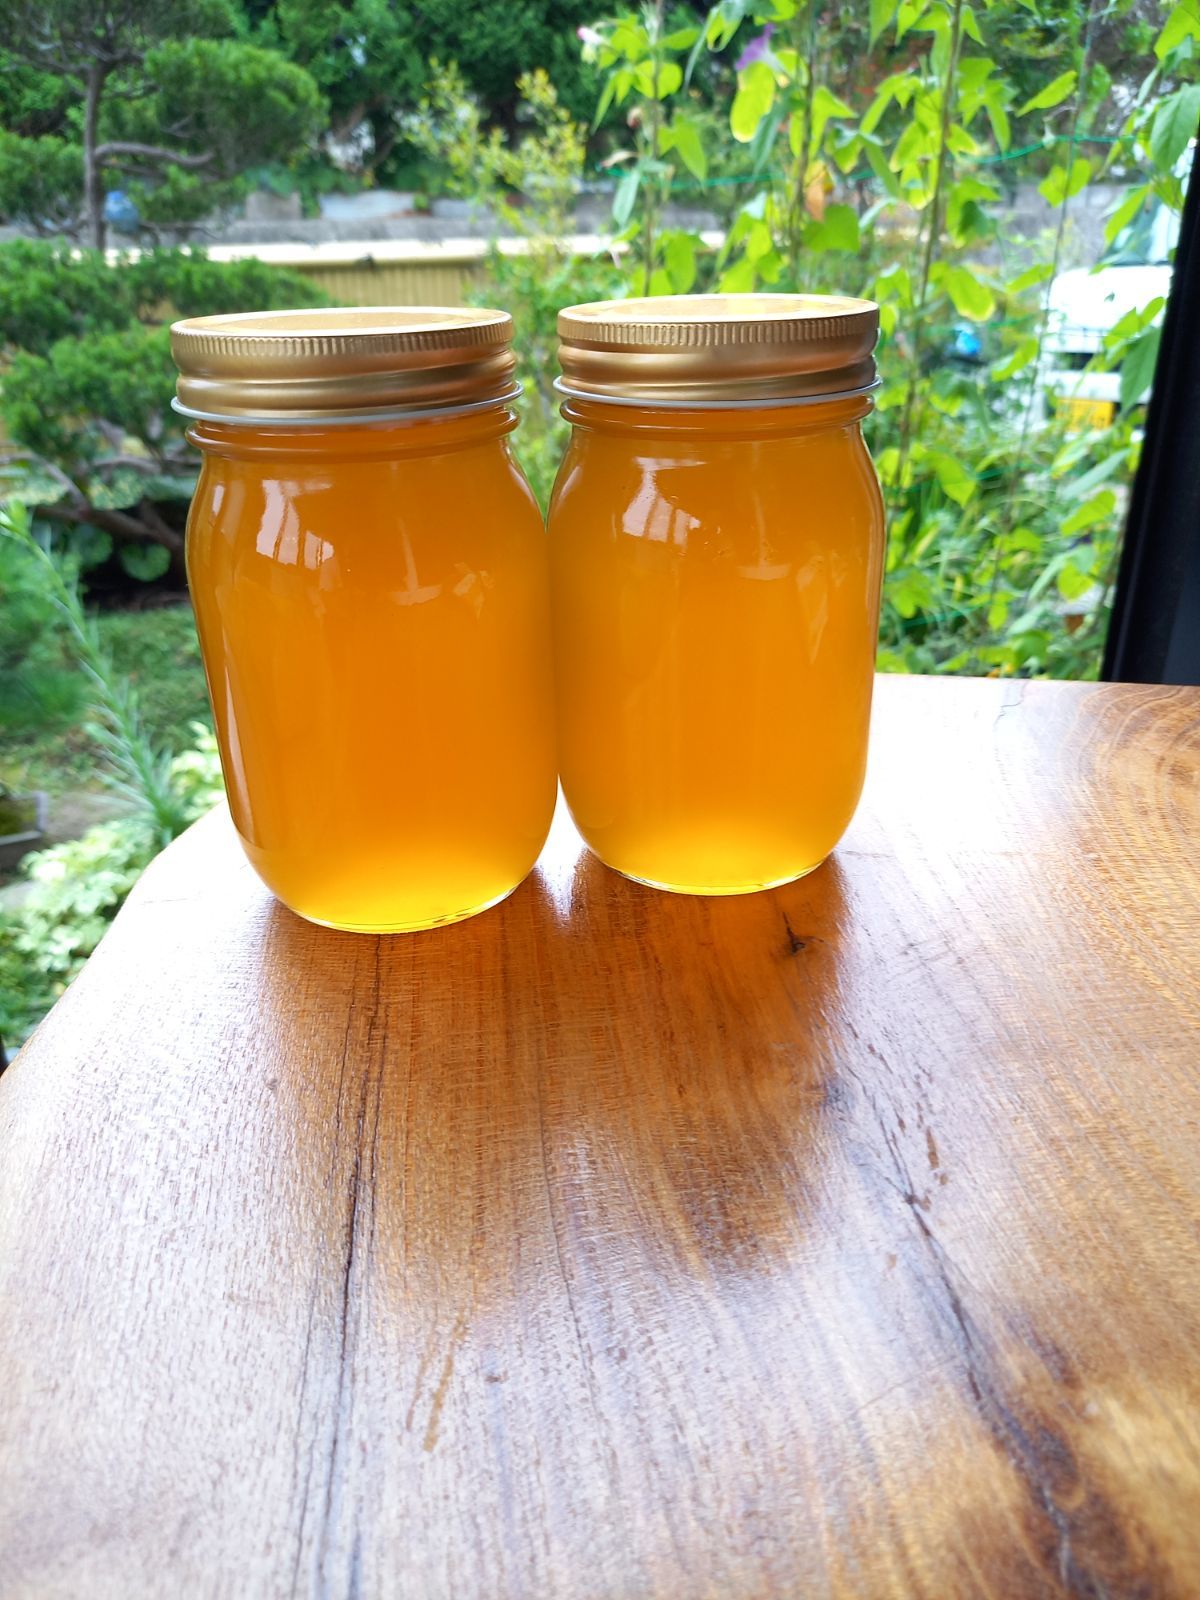 日本蜜蜂ハチミツ(食べ比べ)600g×2